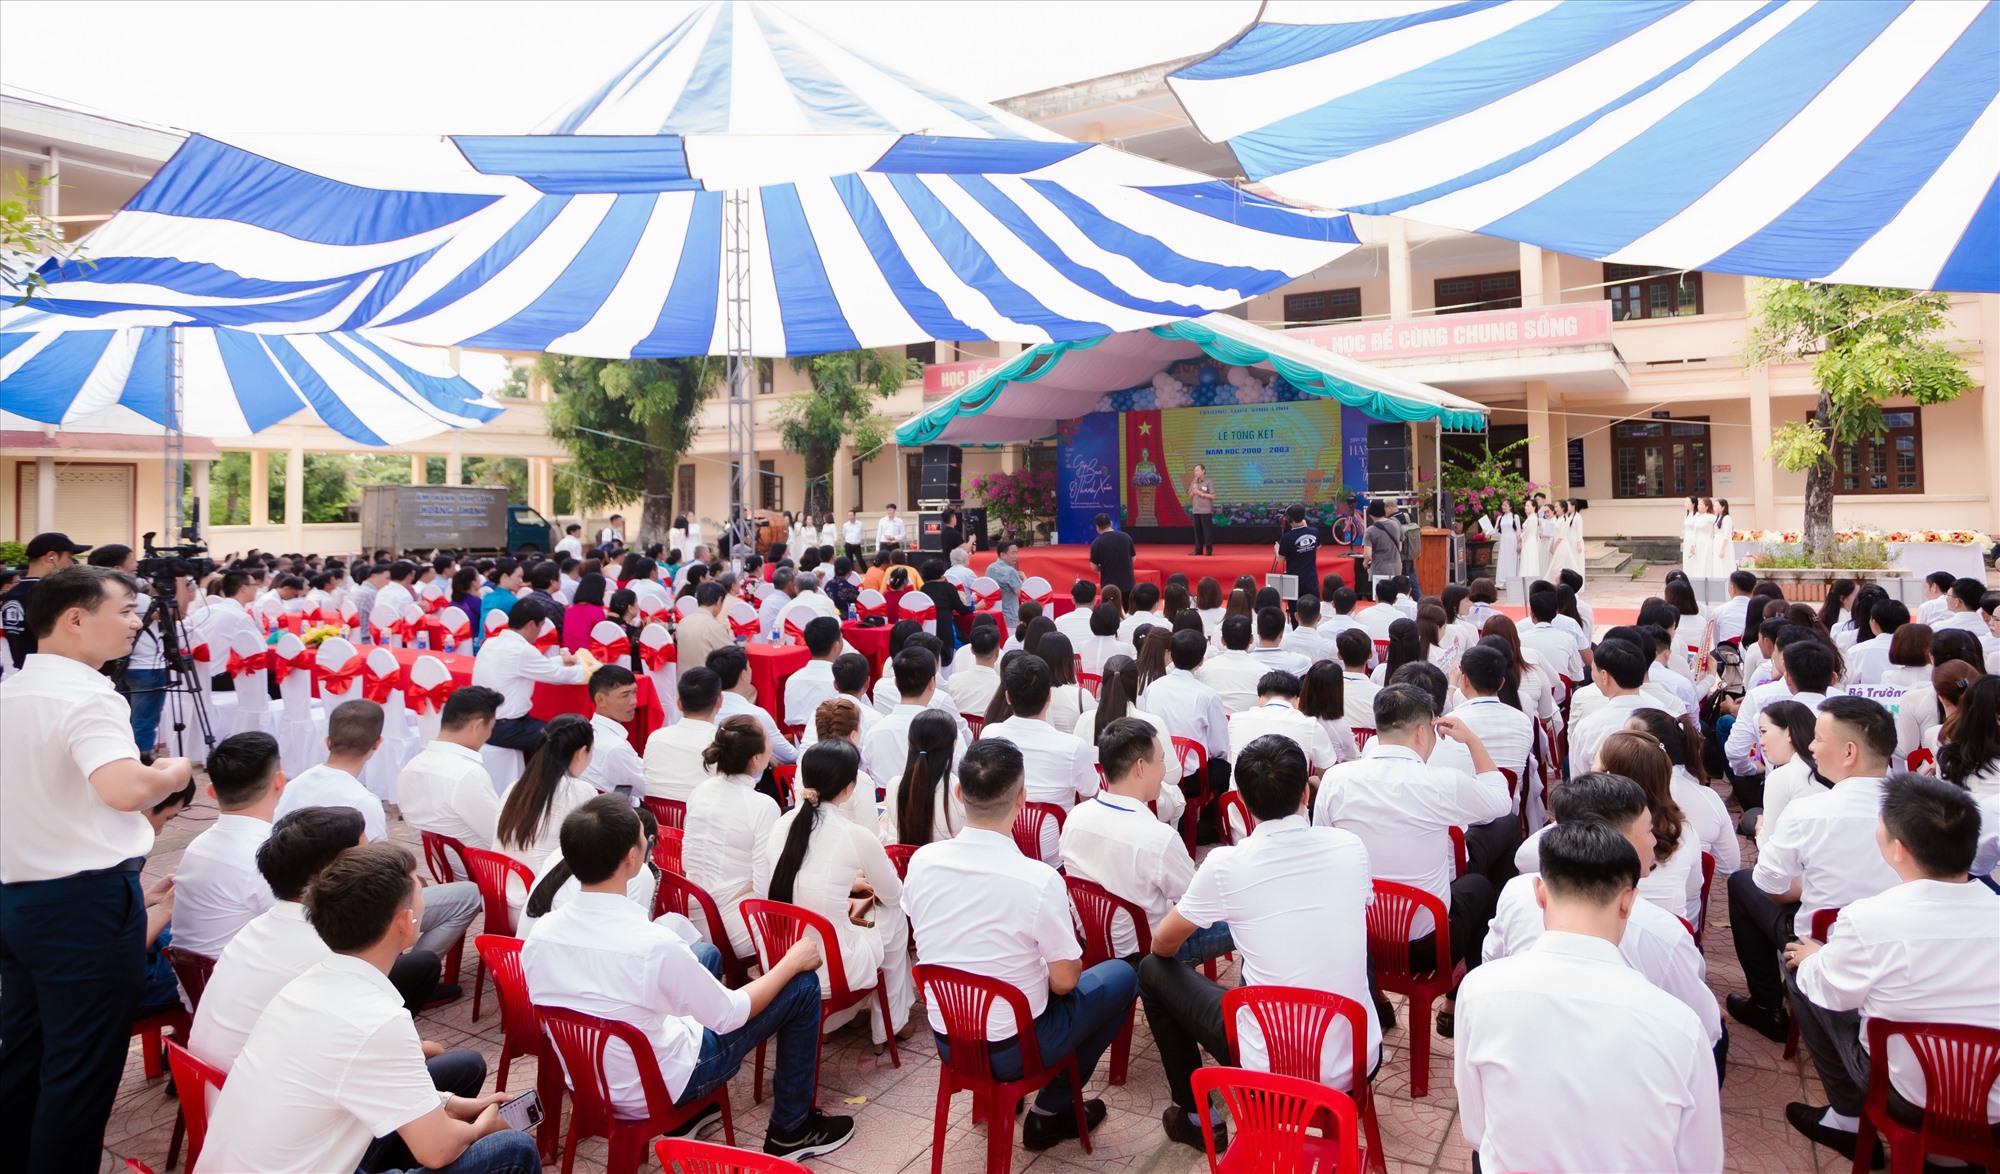 Quang cảnh chương trình Hội khóa 20 năm “Hành trình thanh xuân” do cựu học sinh khóa 2000-2003 tổ chức tại Trường THPT Vĩnh Linh - Ảnh: CHS